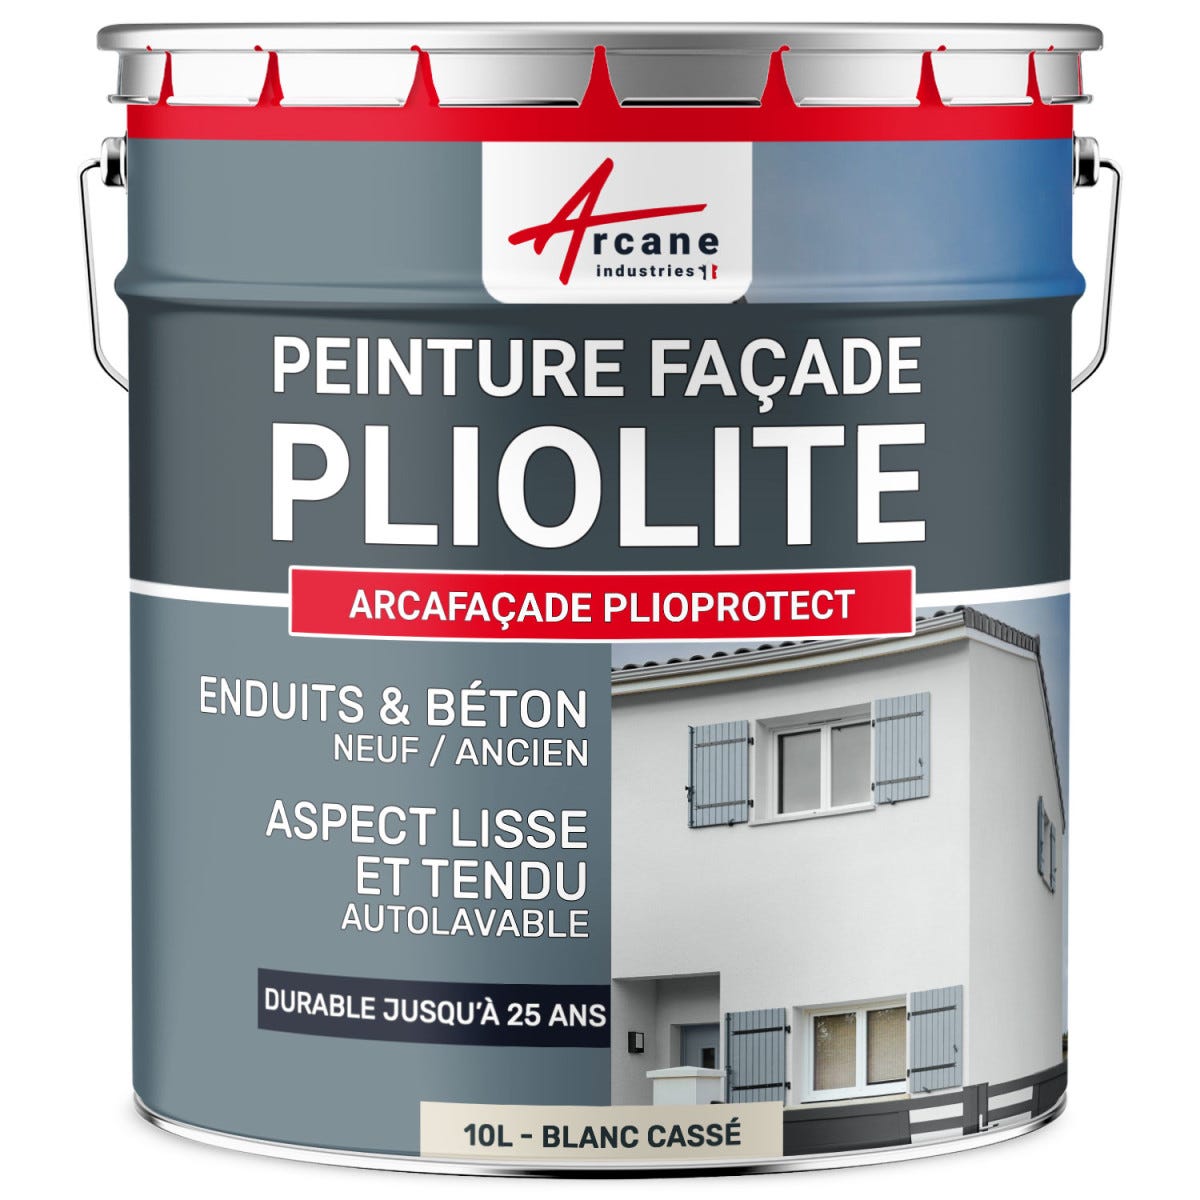 Peinture Façade Solvantée Pliolite - ARCAFACADE PLIOPROTECT - 2.5 L (+ ou - 20 m² en 1 couche) - Pierre - RAL 090 90 10 - ARCANE INDUSTRIES 7